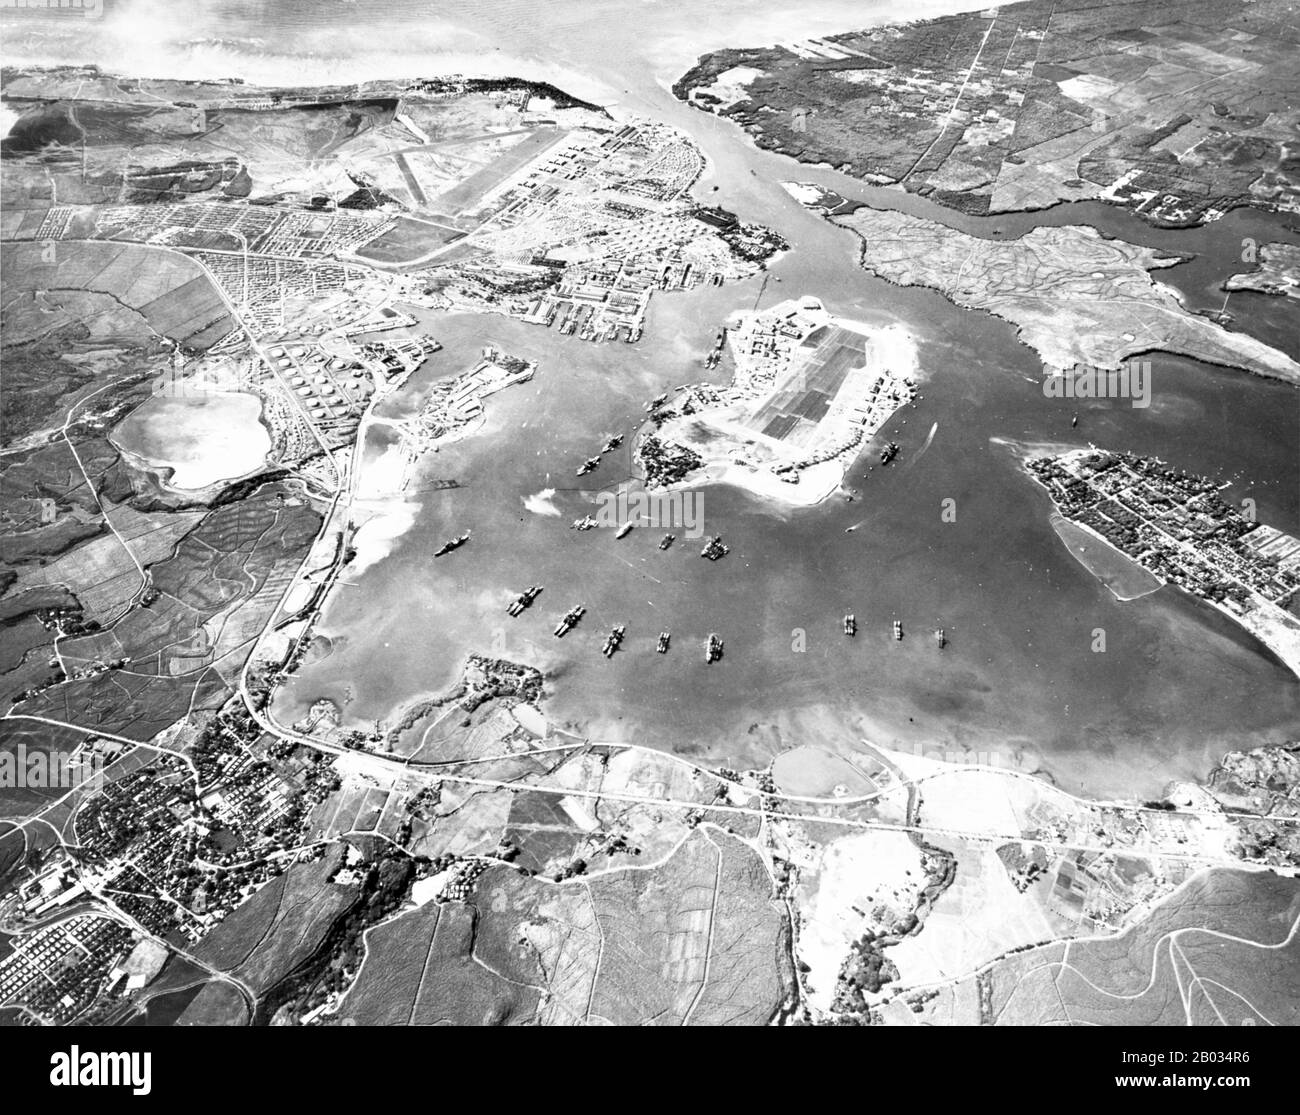 Pearl Harbor es un puerto laguna en la isla de Oahu, Hawai, al oeste de Honolulu. Gran parte del puerto y las tierras circundantes es una base naval de aguas profundas de la Marina de los Estados Unidos. También es la sede de la flota de los Estados Unidos del Pacífico. El gobierno de los Estados Unidos obtuvo por primera vez el uso exclusivo de la entrada y el derecho de mantener una estación de reparación y de coaling para los barcos aquí en 1887. El ataque a Pearl Harbor por el Imperio de Japón el 7 de diciembre de 1941 fue la causa inmediata de la entrada de los Estados Unidos en la Segunda Guerra Mundial Foto de stock